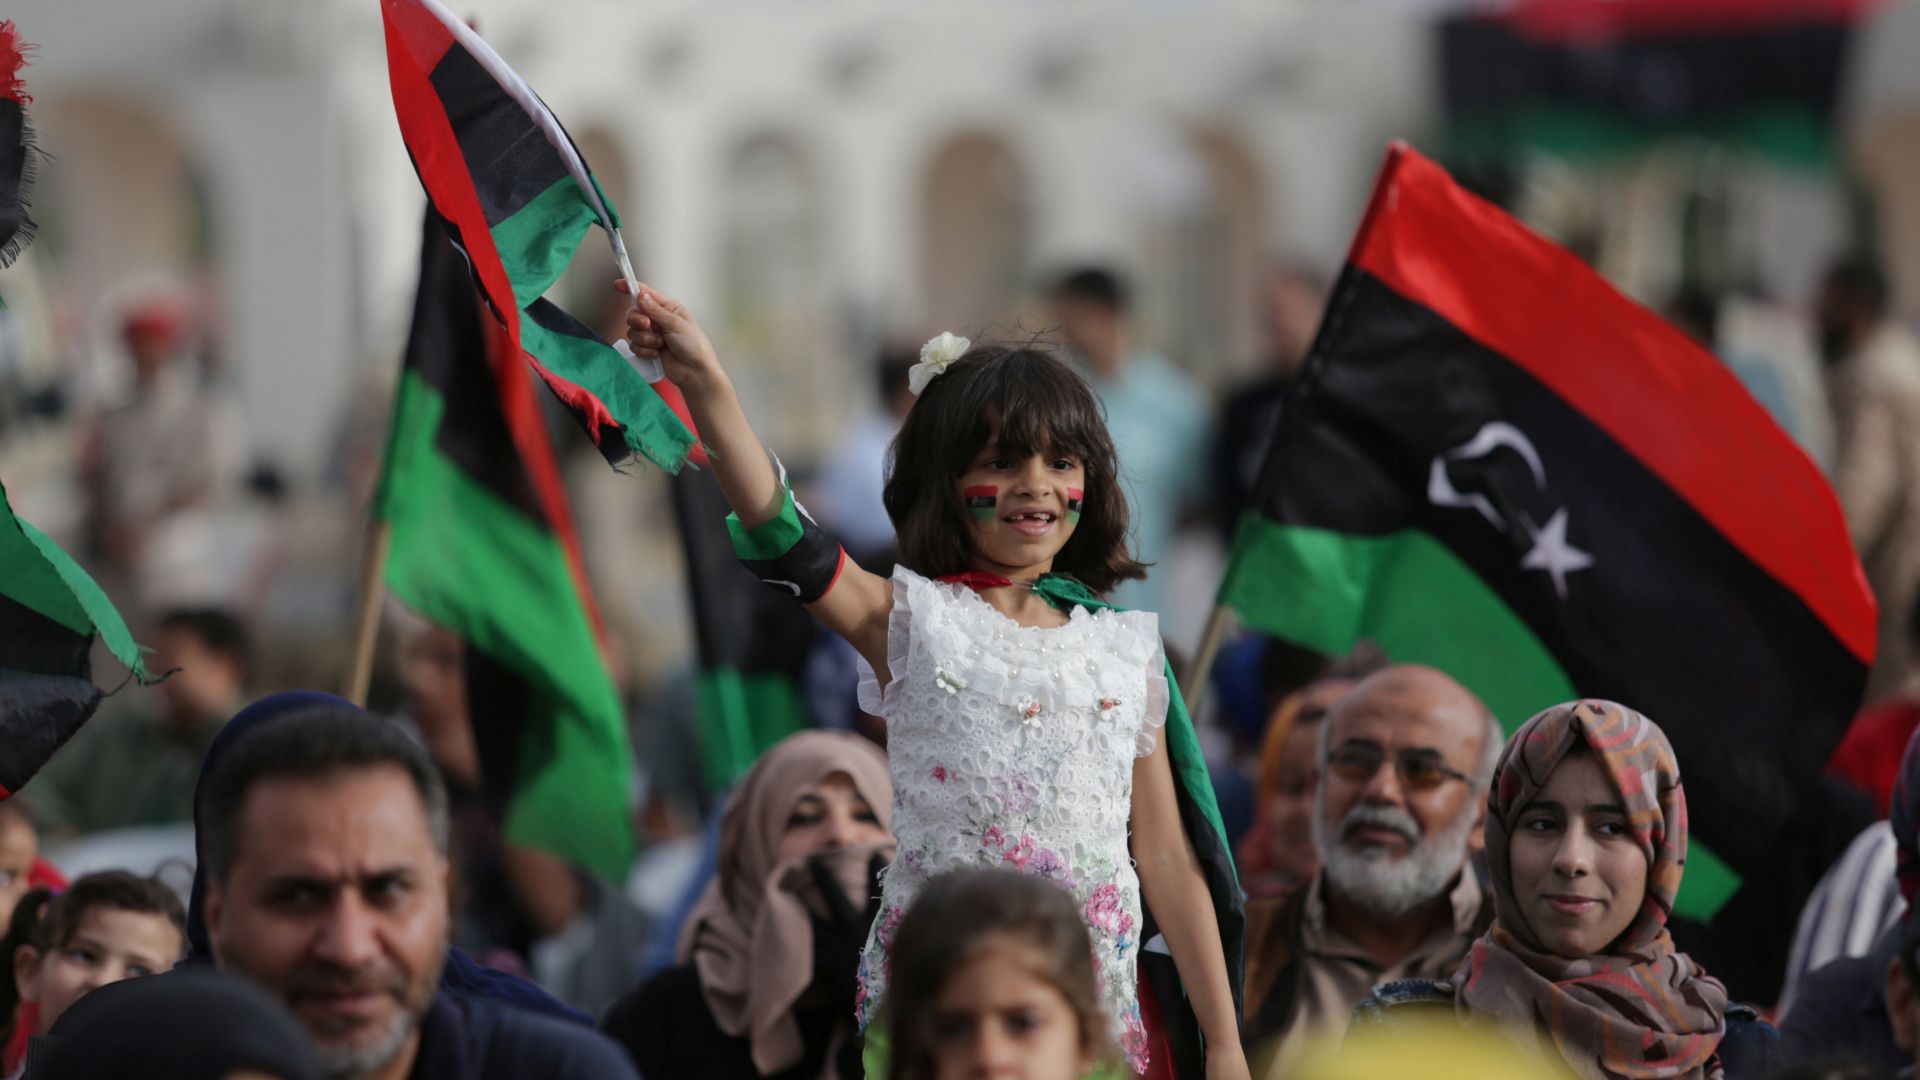 Libya: The way forward - Exploring paths towards democracy and human rights